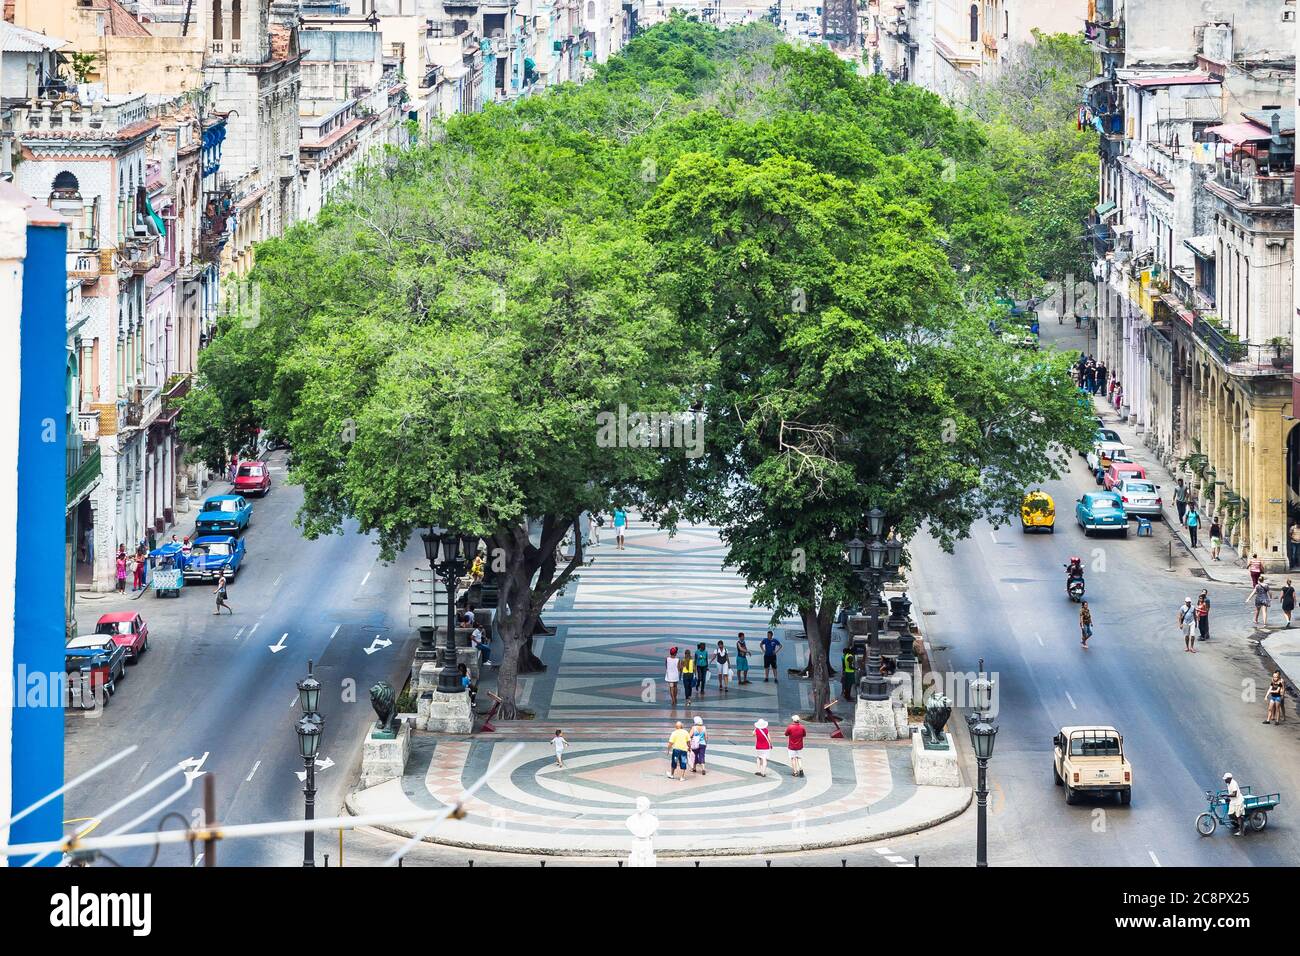 Havanna / Kuba - 04.15.2015: Der Central Park (Parque centrale) mit Bäumen auf beiden Seiten, von oben aufgenommen Stockfoto